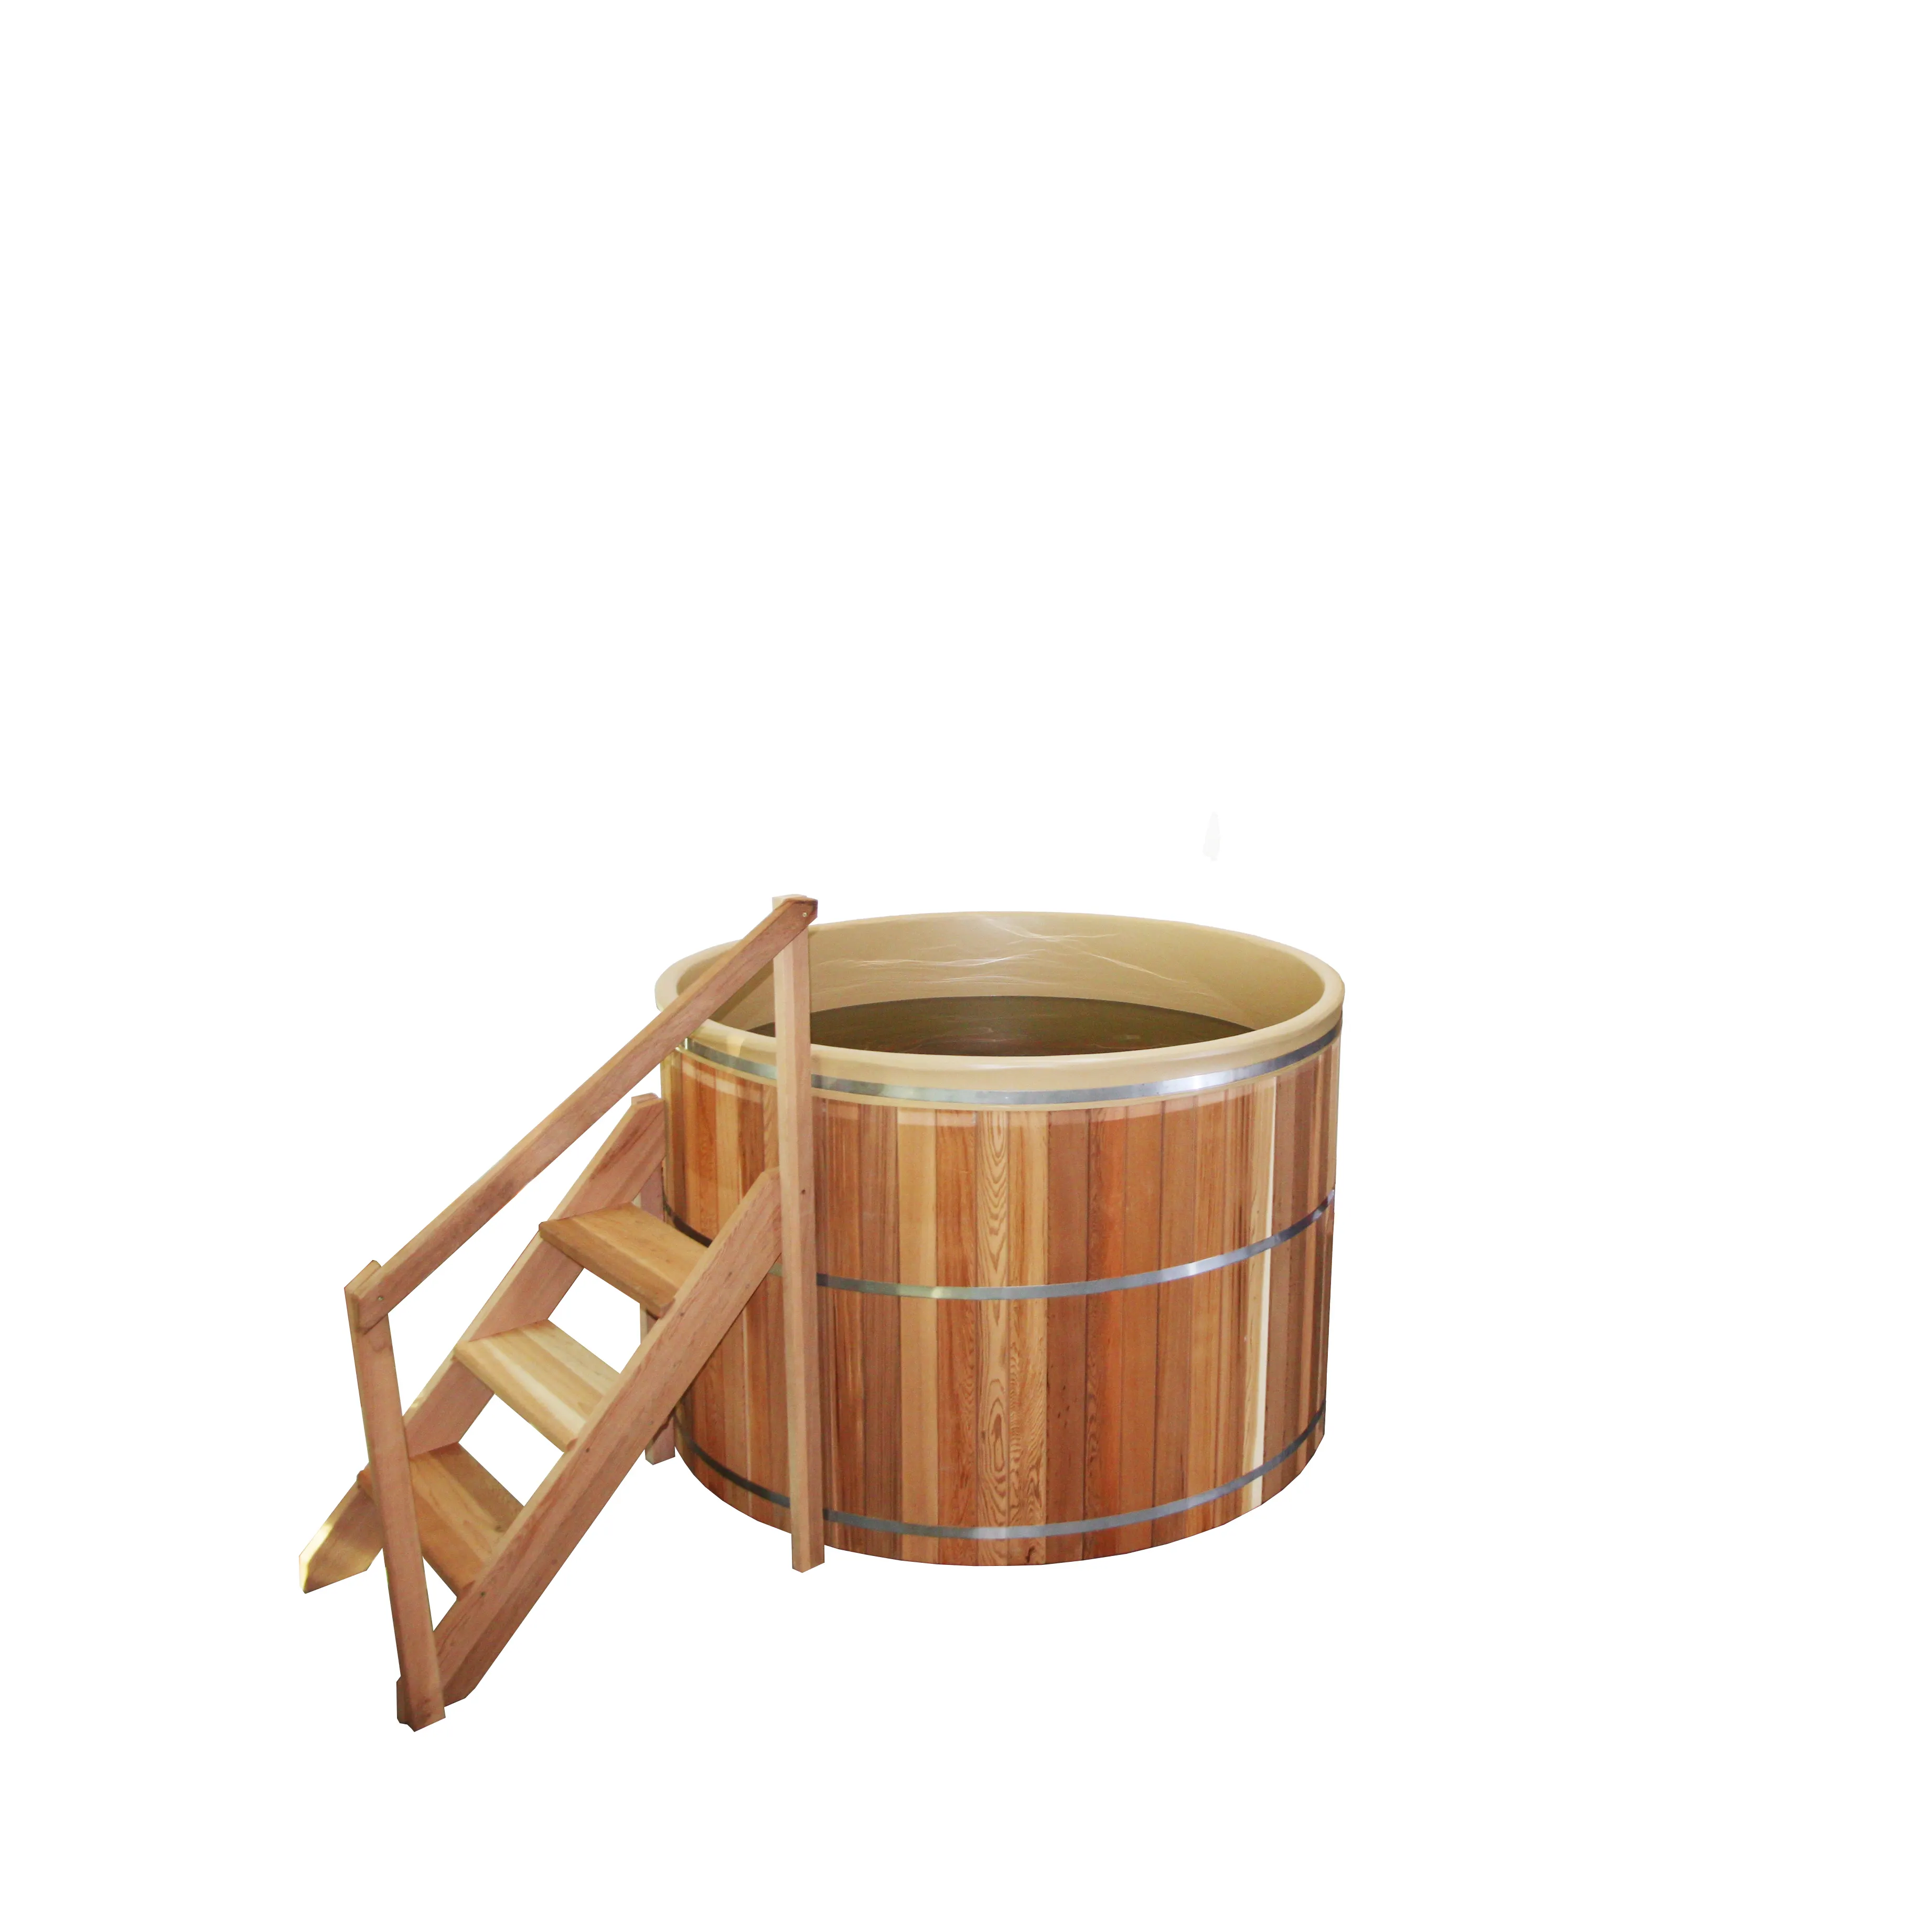 Canadian cedro rosso vasca idromassaggio in legno per uso domestico a buon mercato esterno interno forno a legna per la vendita